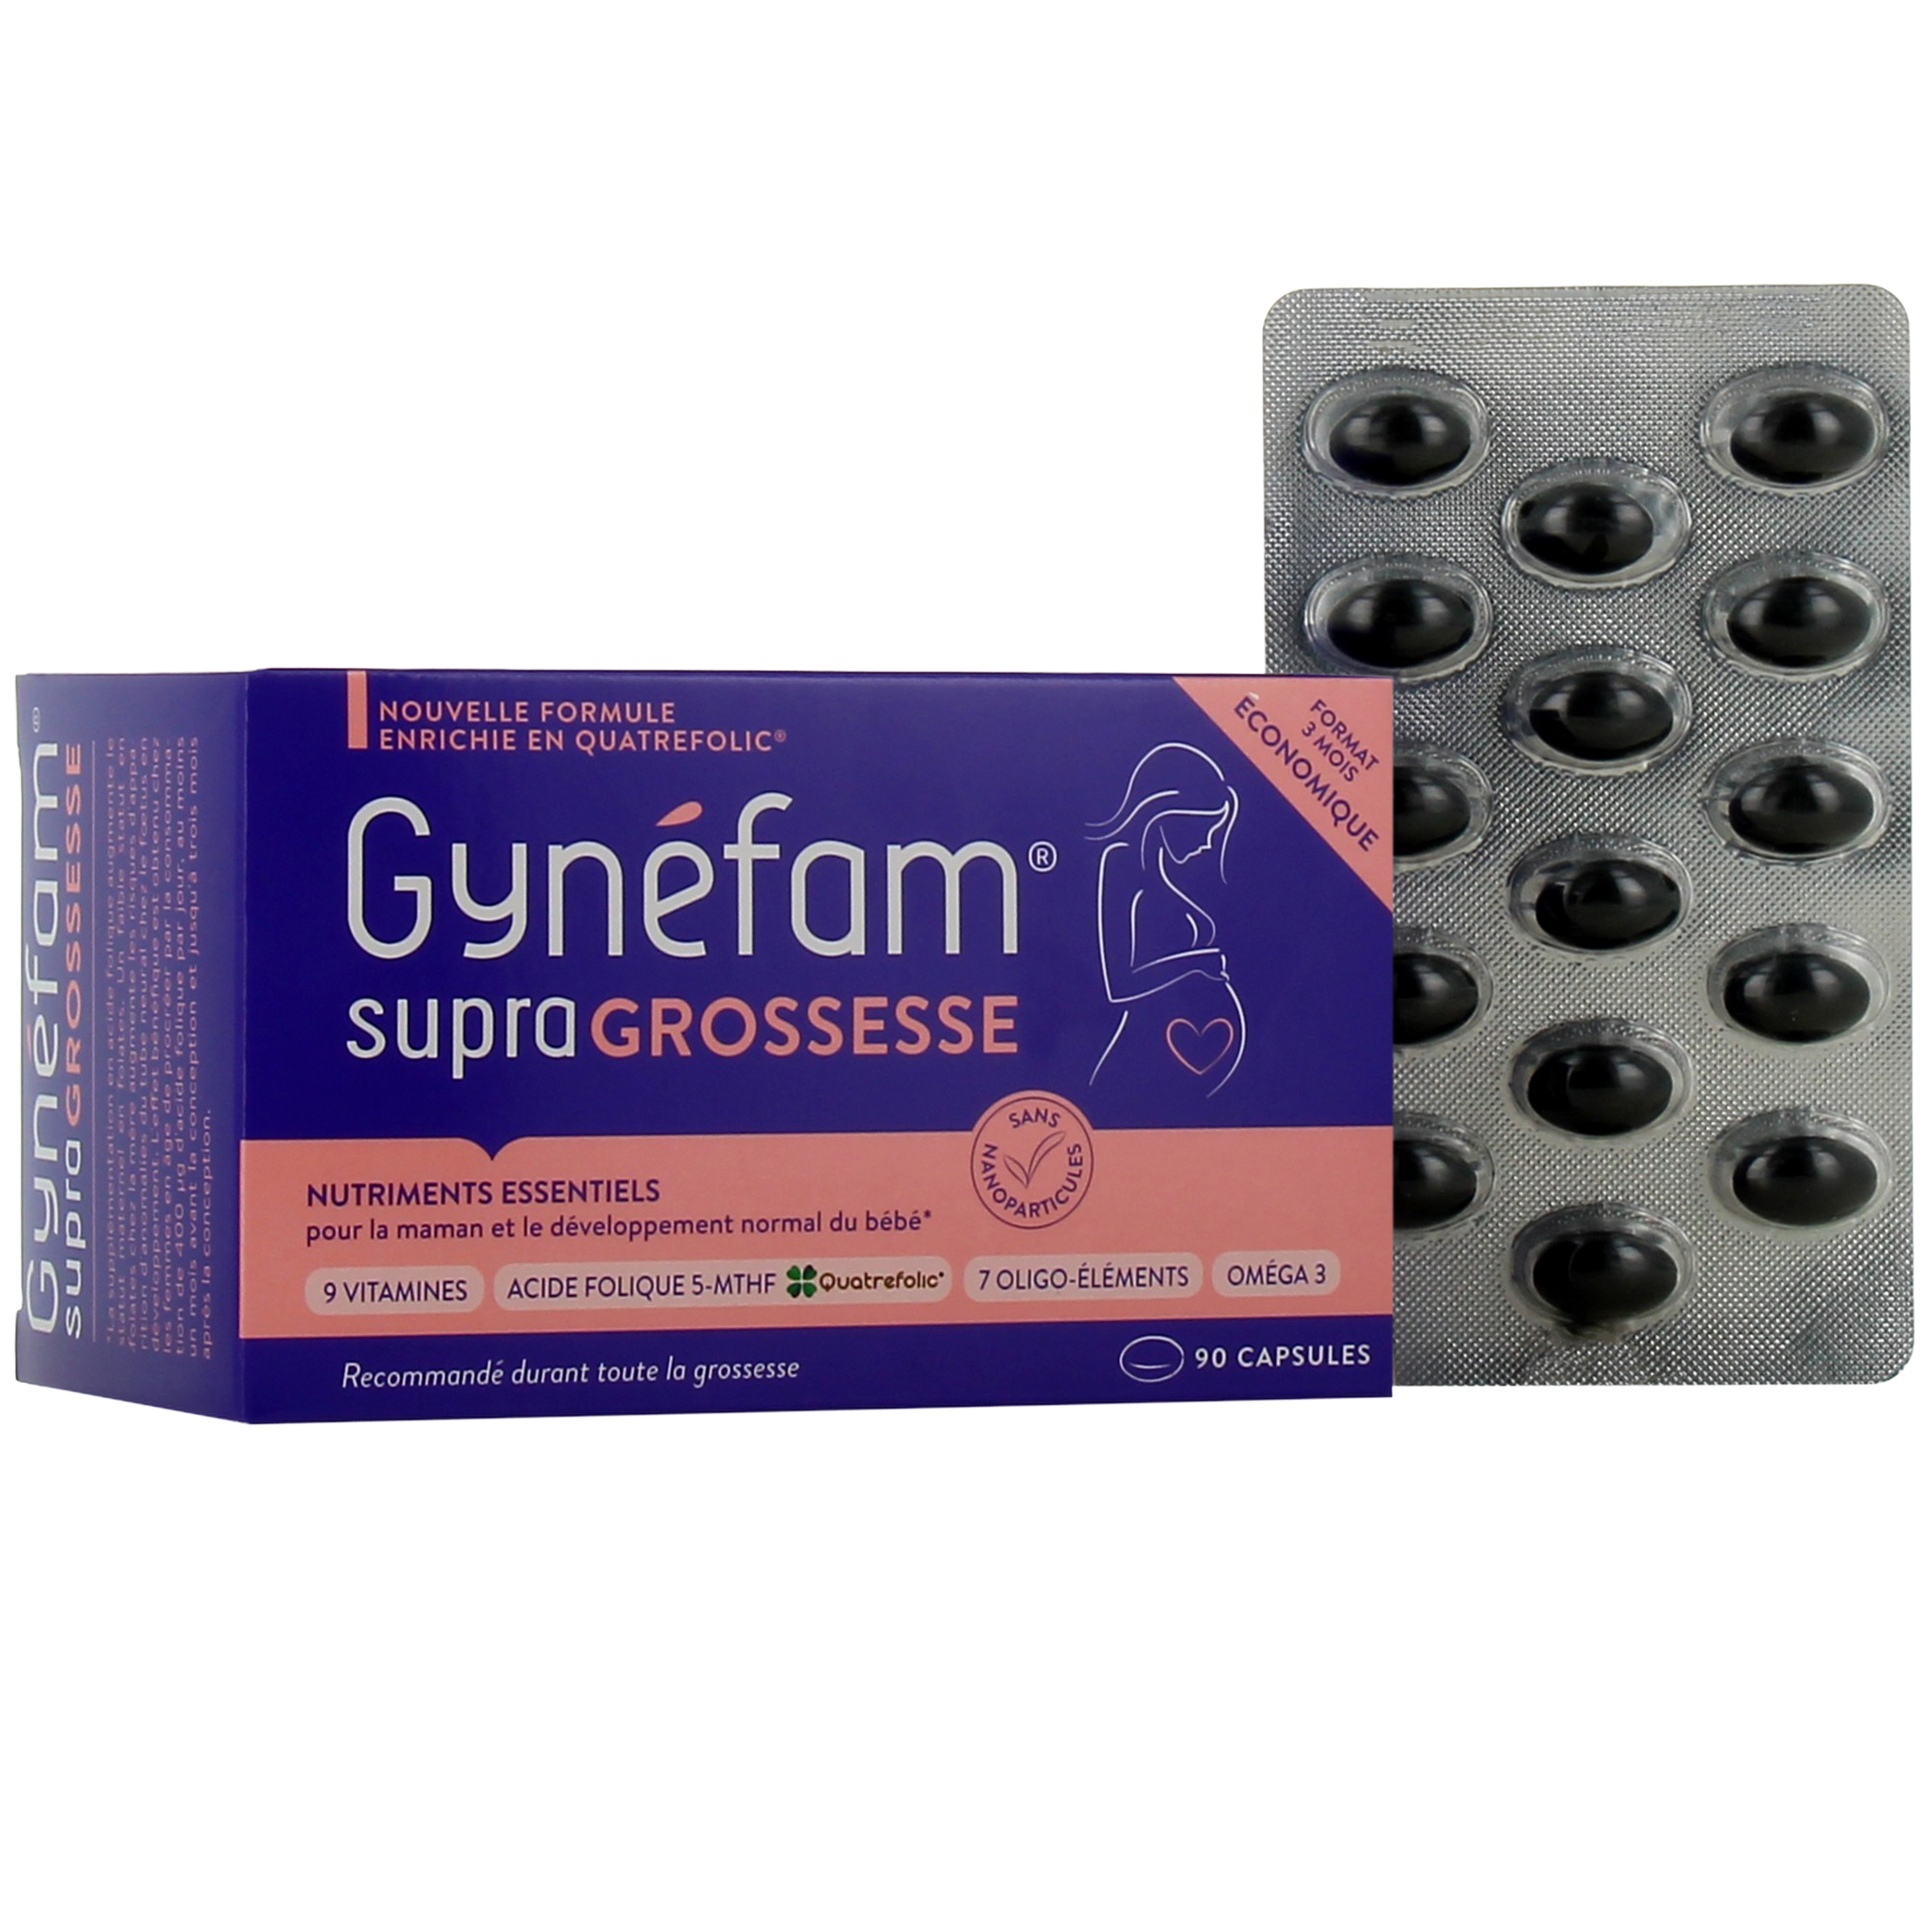 Gynefam Supra xl 90 capsules